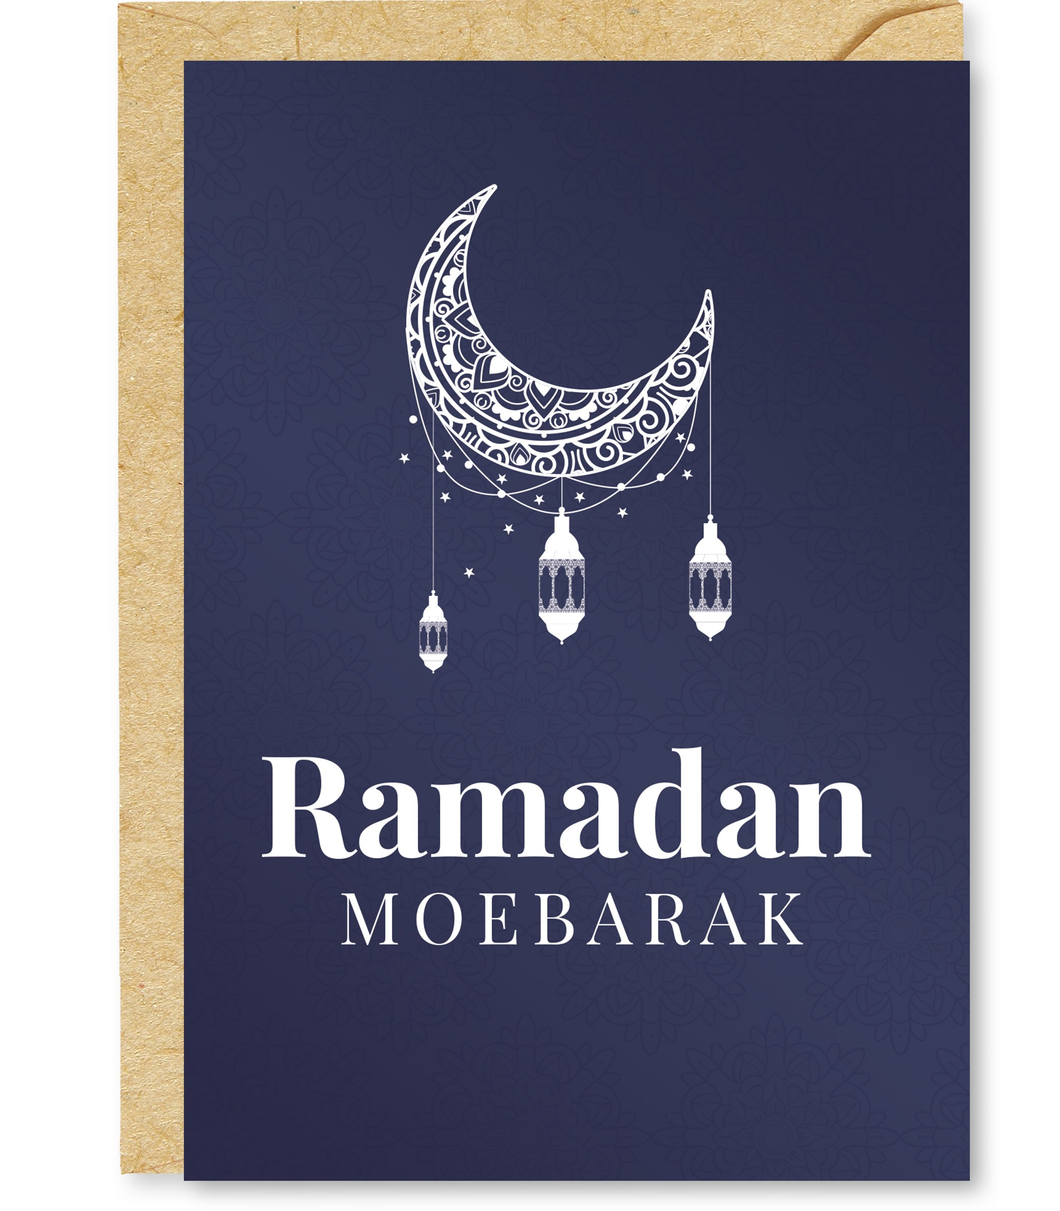 Ramadan Moebarak